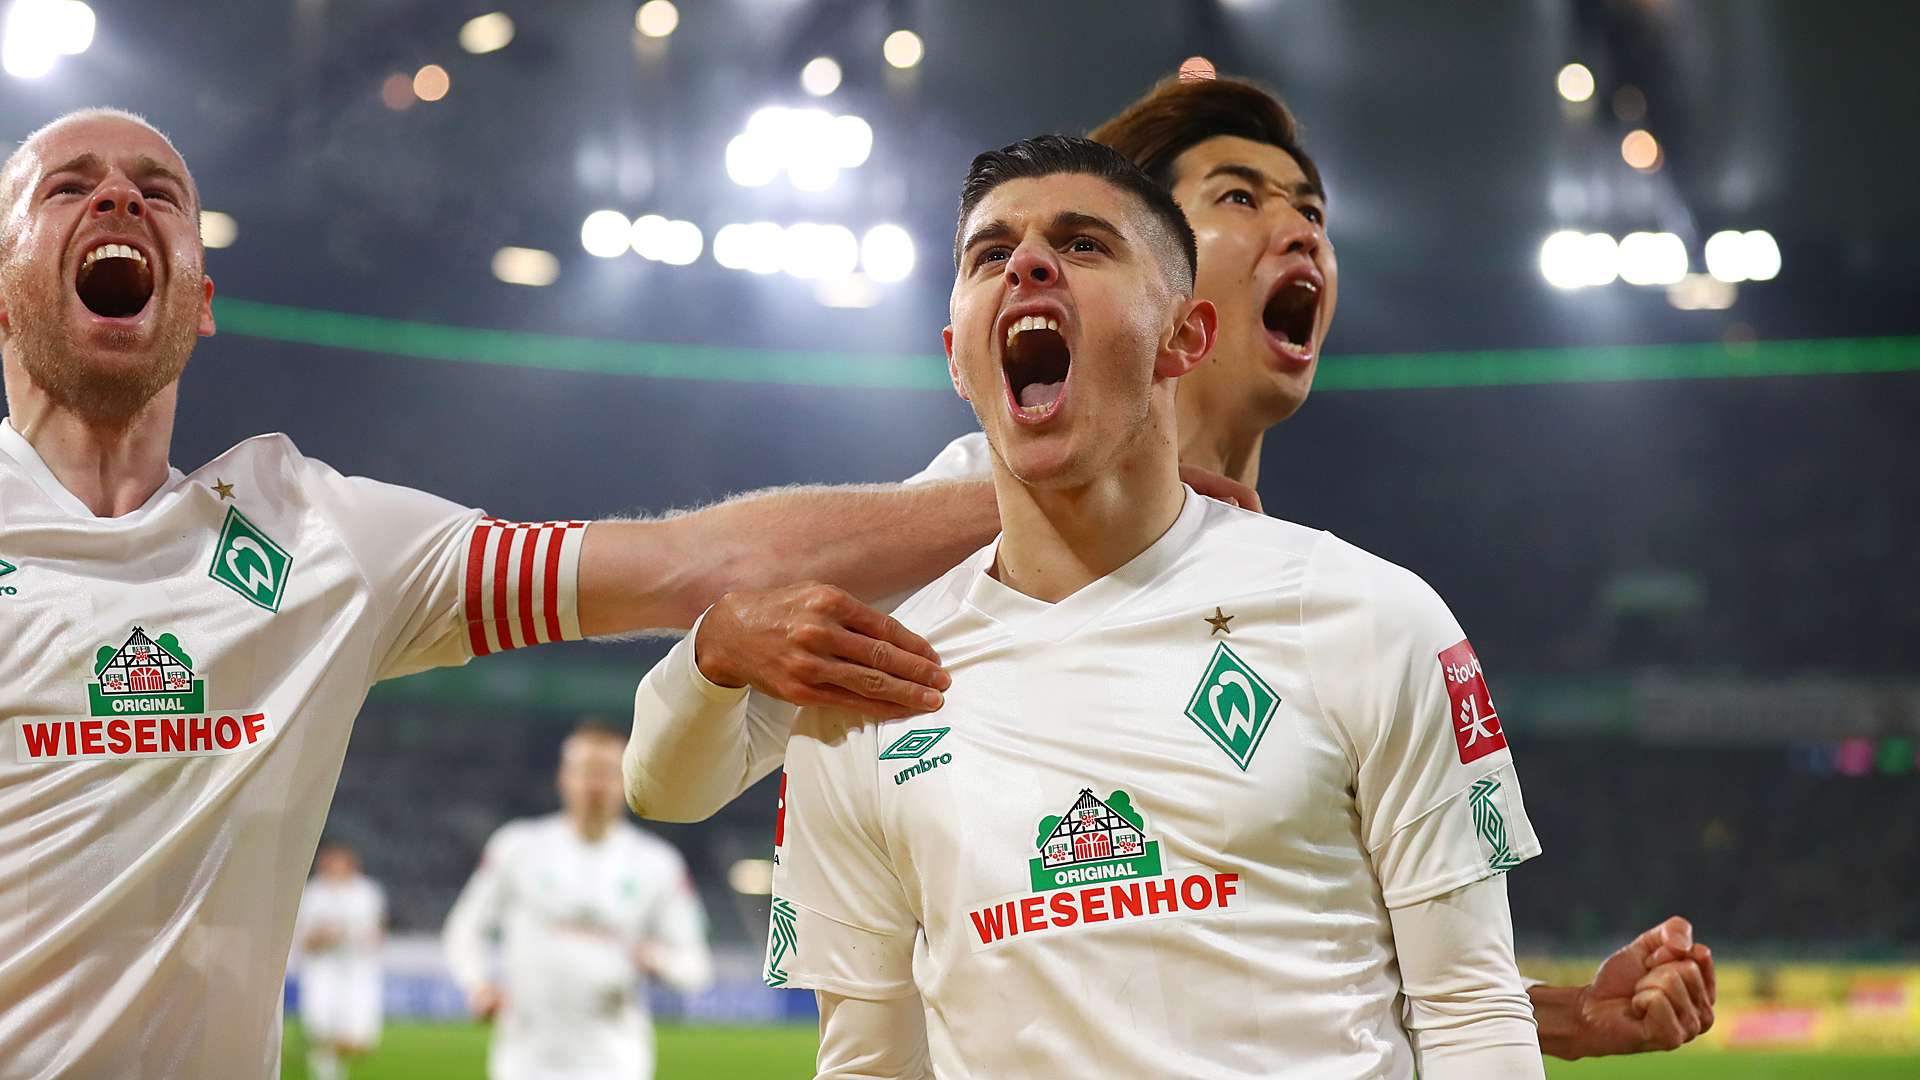 Werder Bremen VfL Wolfsburg